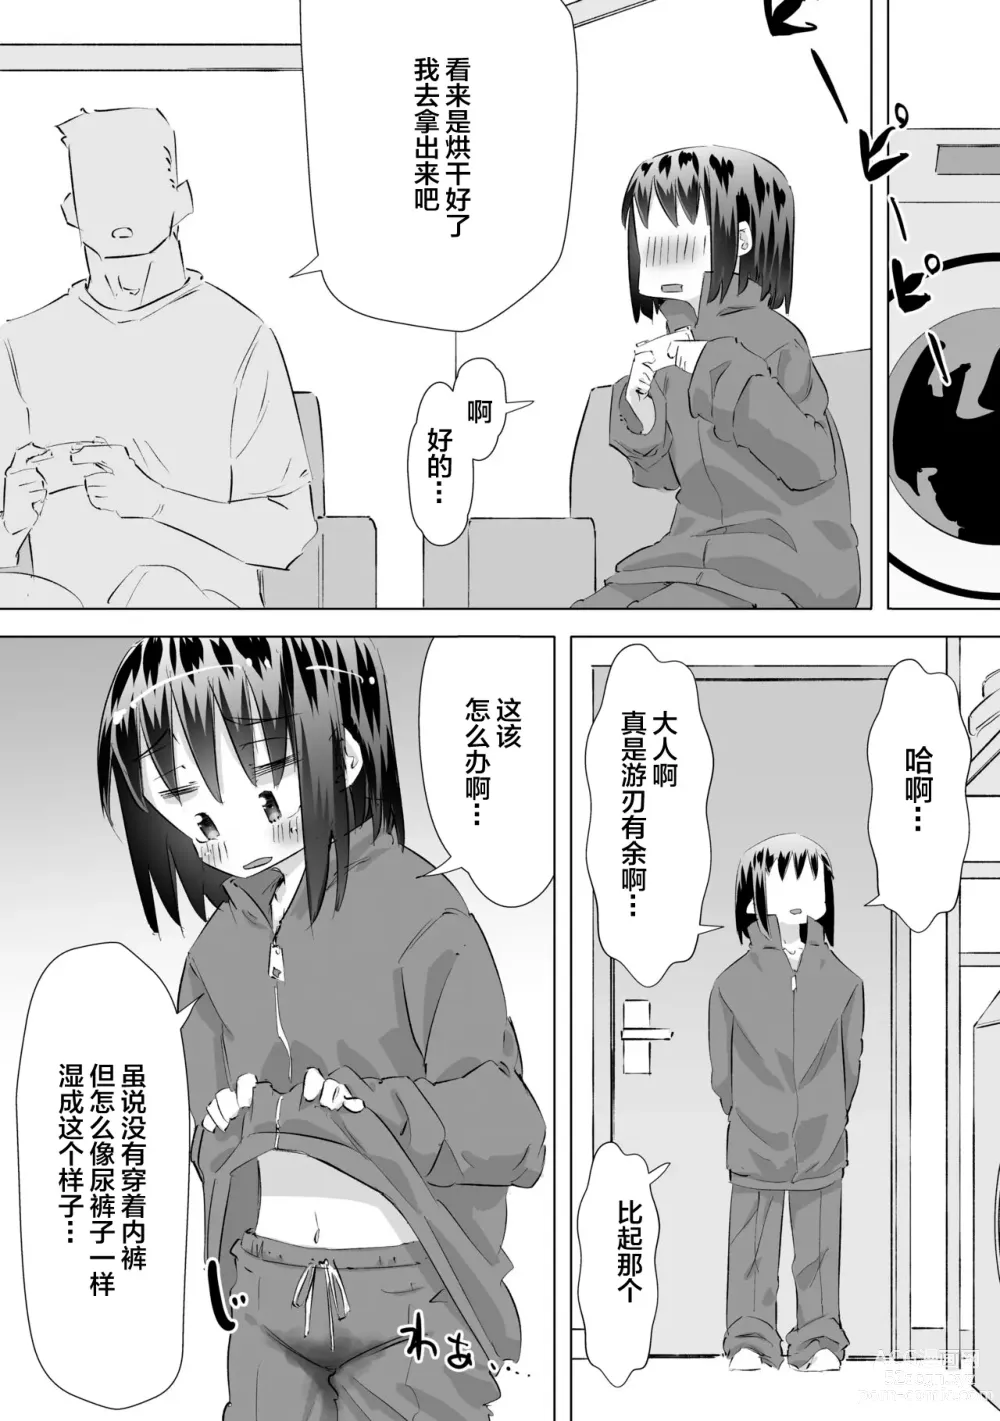 Page 15 of doujinshi 在别人家的院子里忍不住尿了出来被大叔发现后不为人知的事情